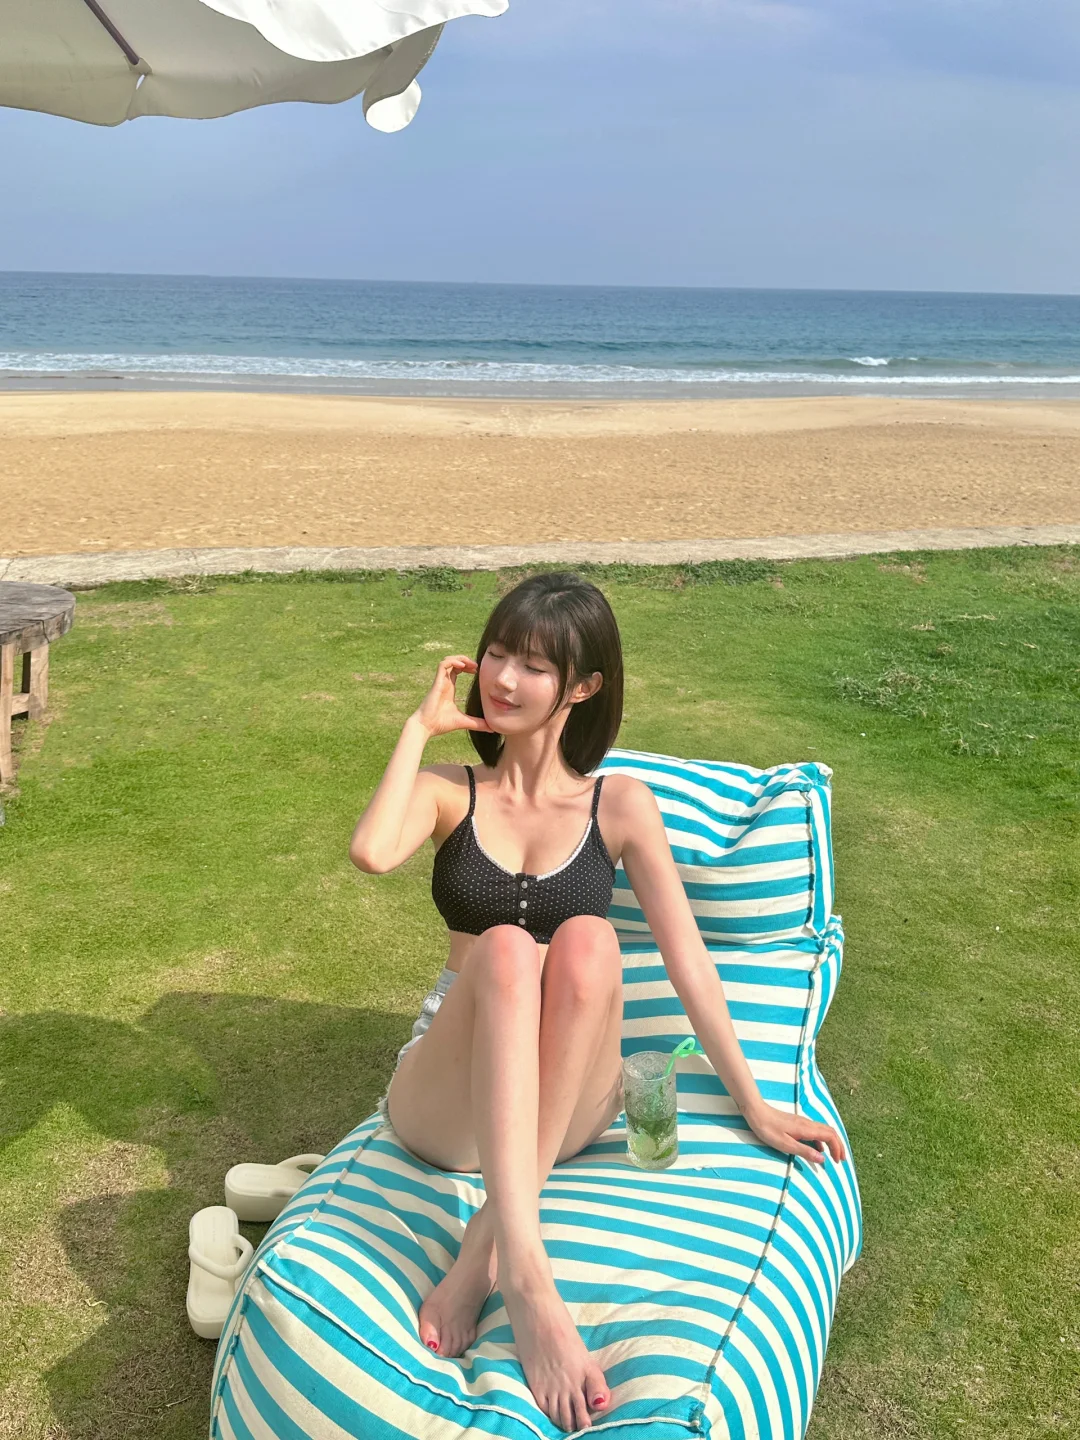 刘小晶 想念短发 想去海边了 #海滩  #海边度假 #短发